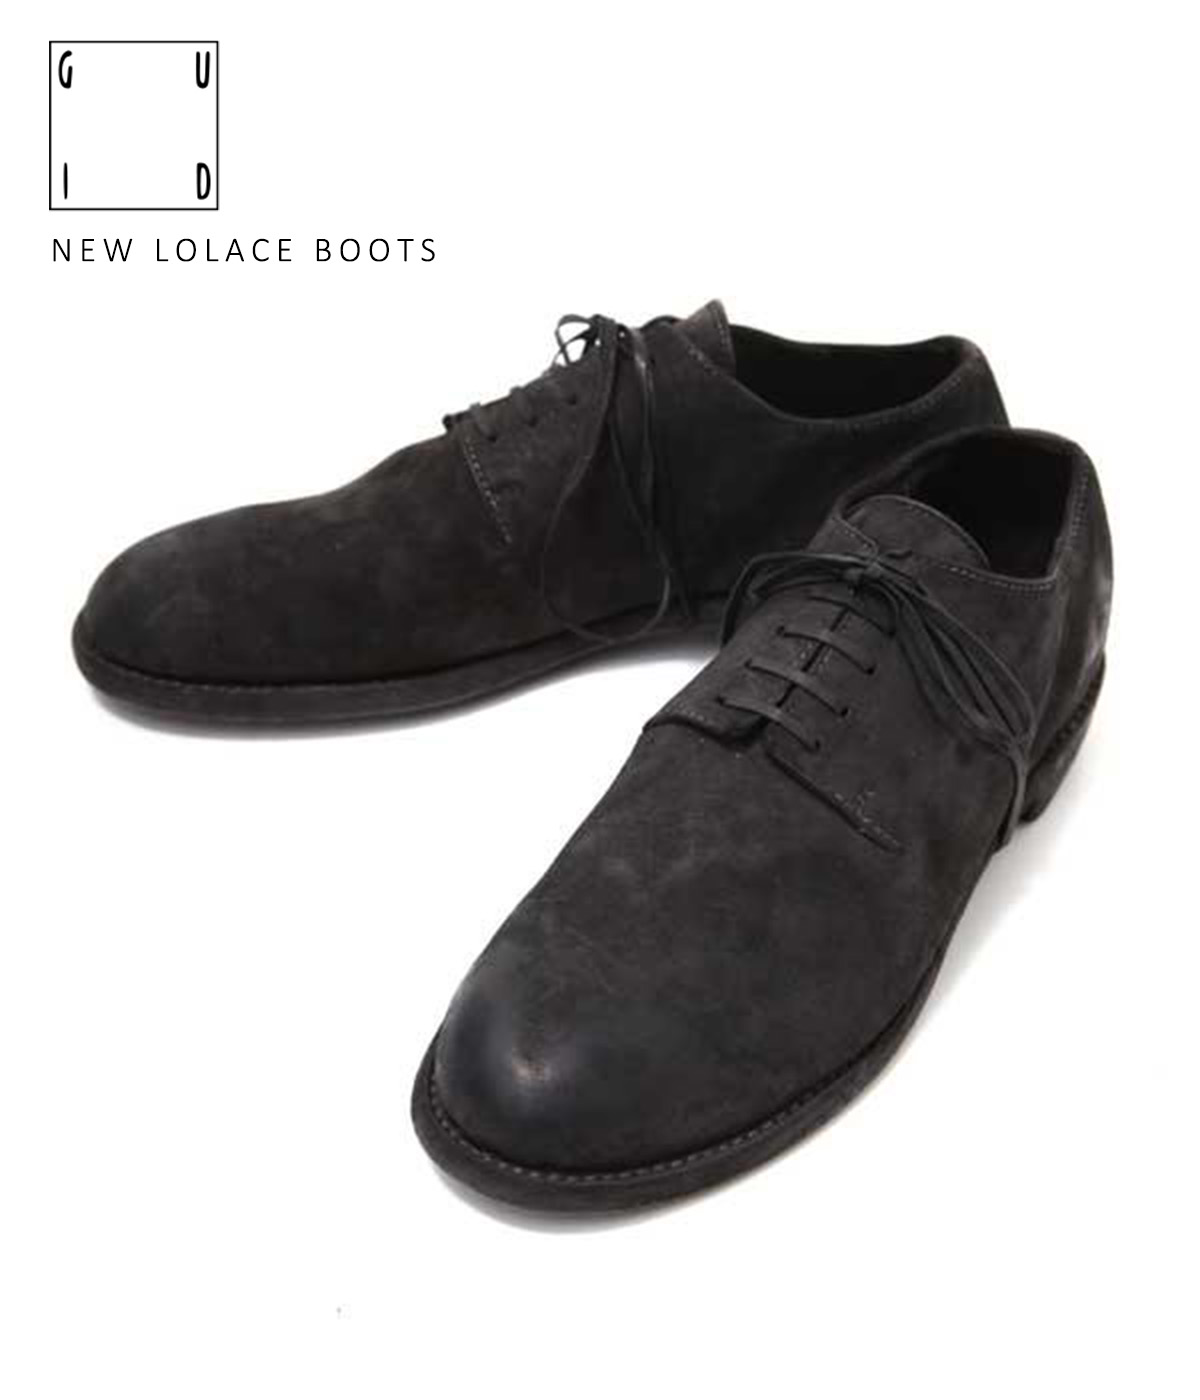 【送料無料】GUIDI / グイディ : NEW LOLACE BOOTS : ニューローレースブーツ ブーツ ローレースシューズ レザーシューズ レースタイプ 革靴 ショートブーツ ダービー ブーツ ワンピースレザー コードバン メンズ ブラック 天然皮革 : 16-cordovanblk-4a【RIP】